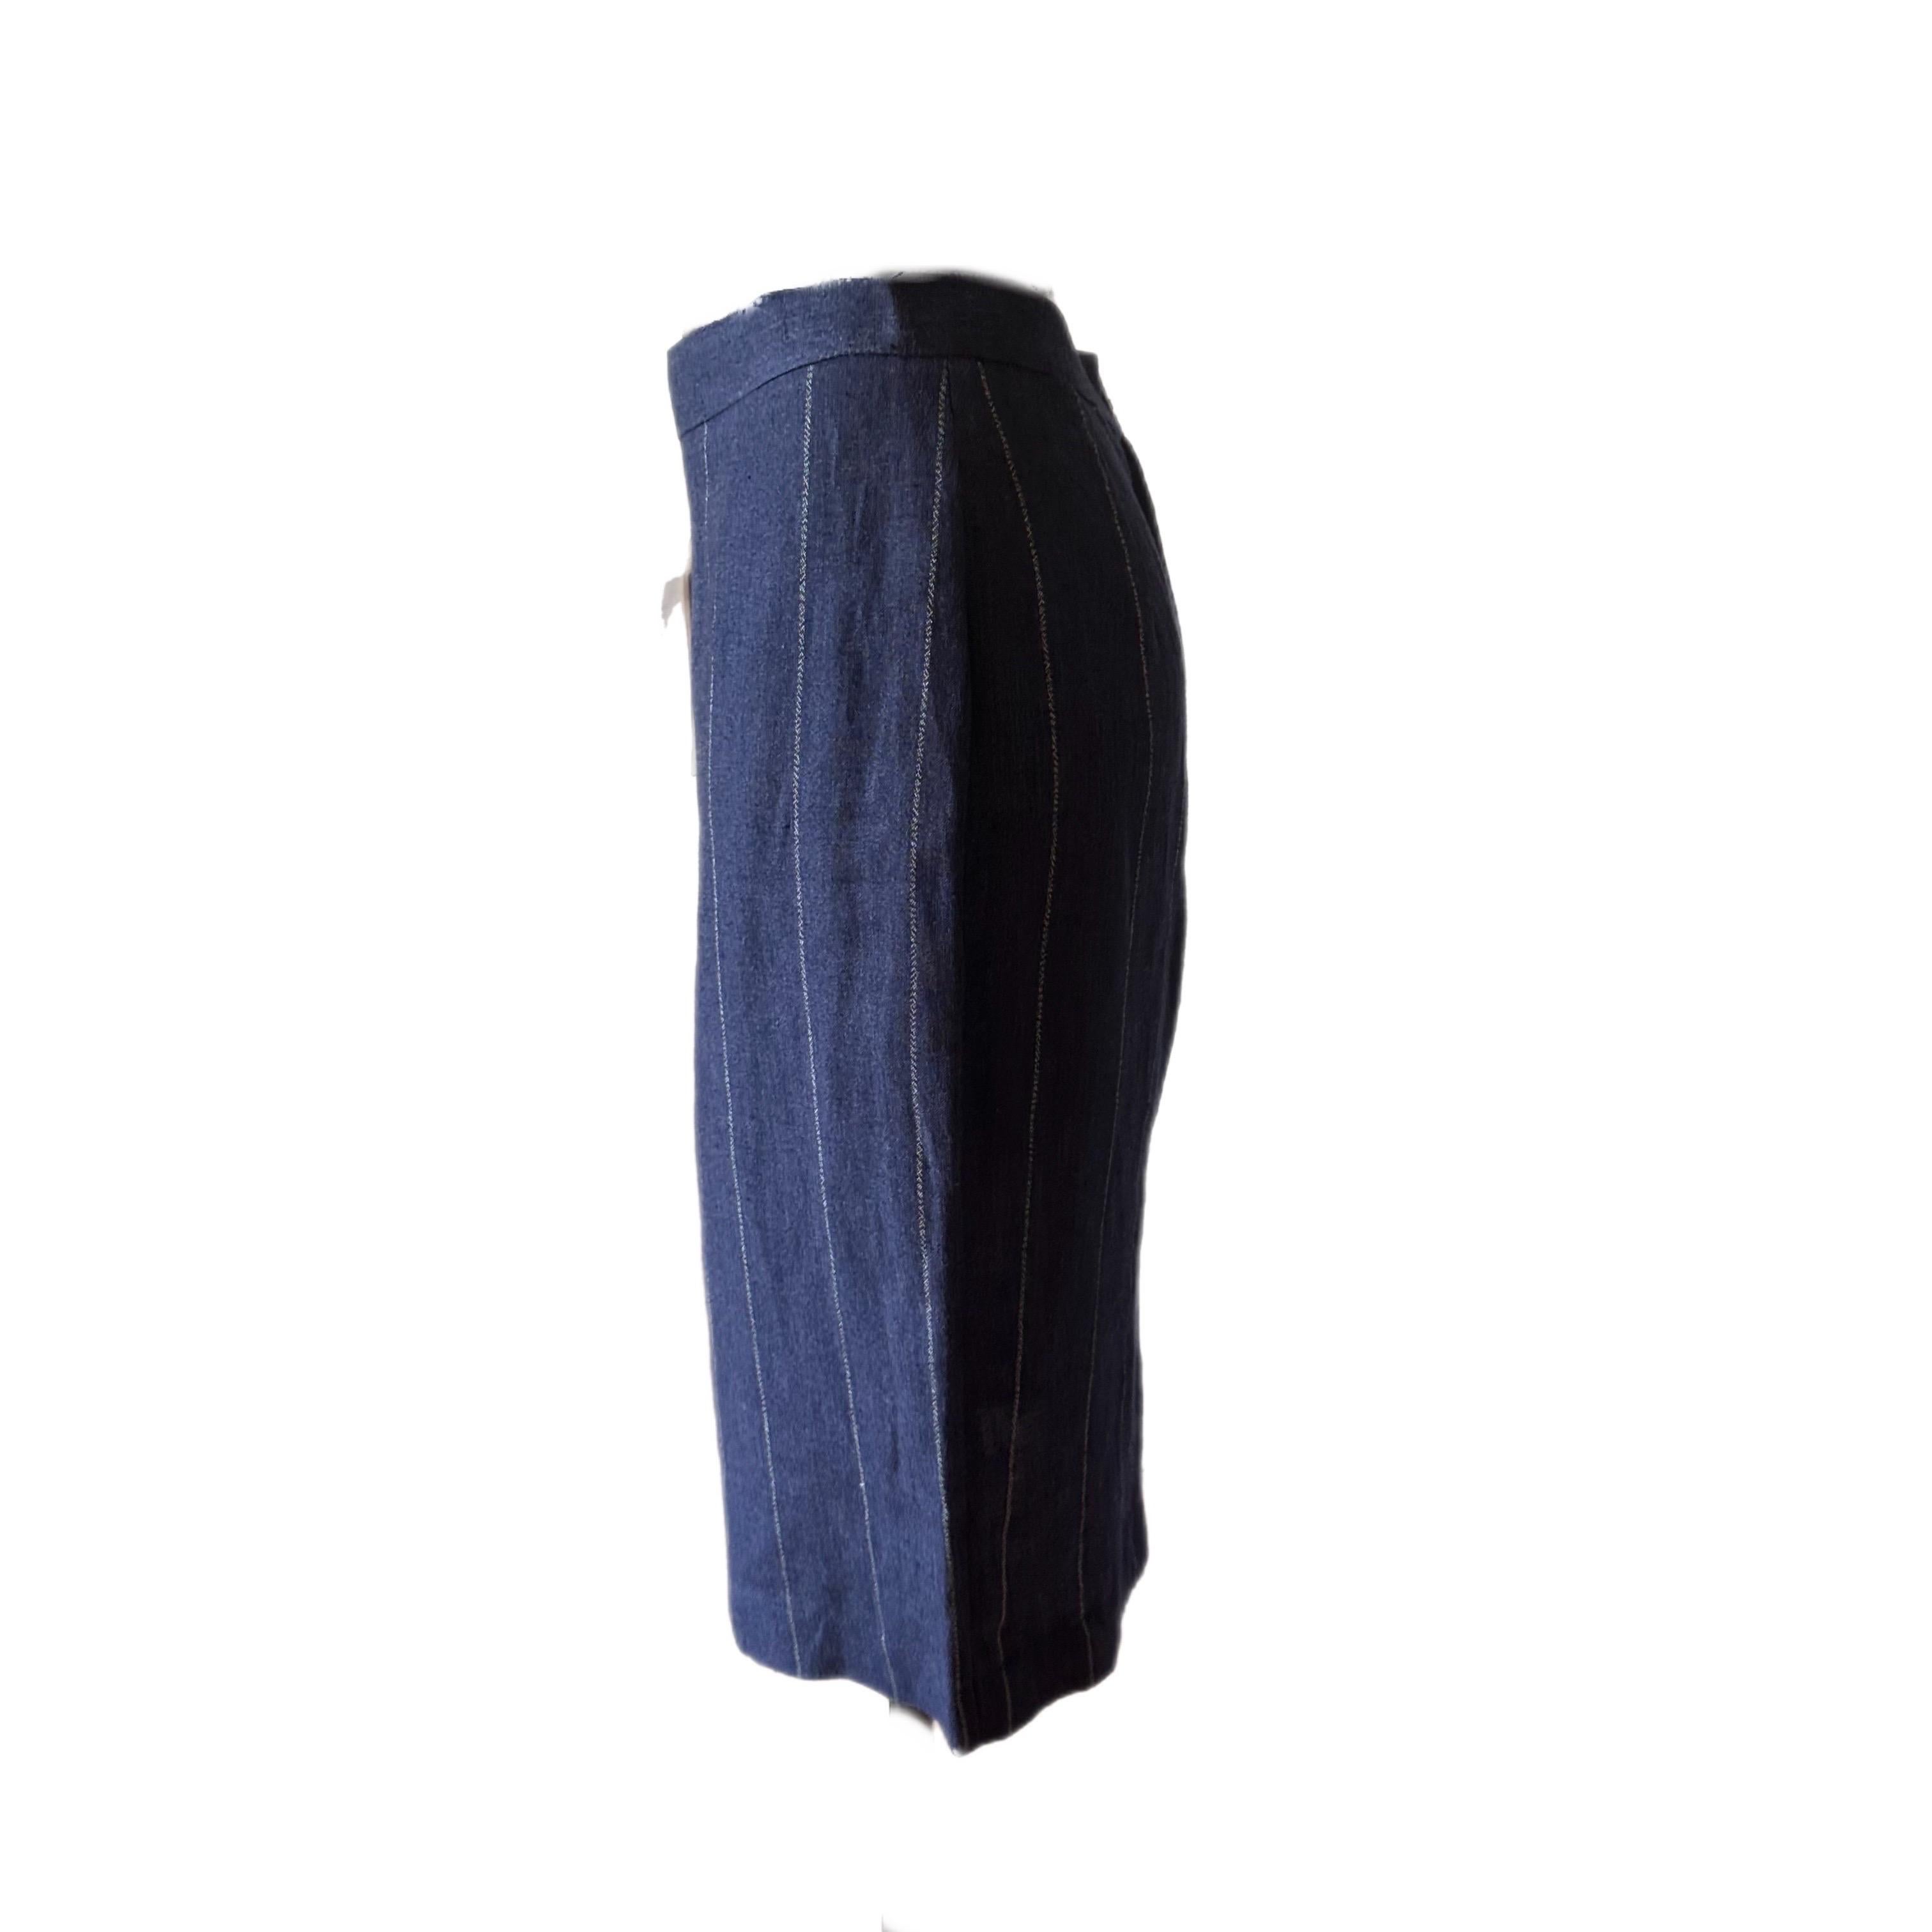 Gonna midi Krizia vintage anni 90 con cartellino
Tessuto leggero blu a righe bianche spacco sul retro e chiusura laterale
Taglia M
Misure:
Vita 35cm
Fianchi 48cm
Lunghezza 64cm